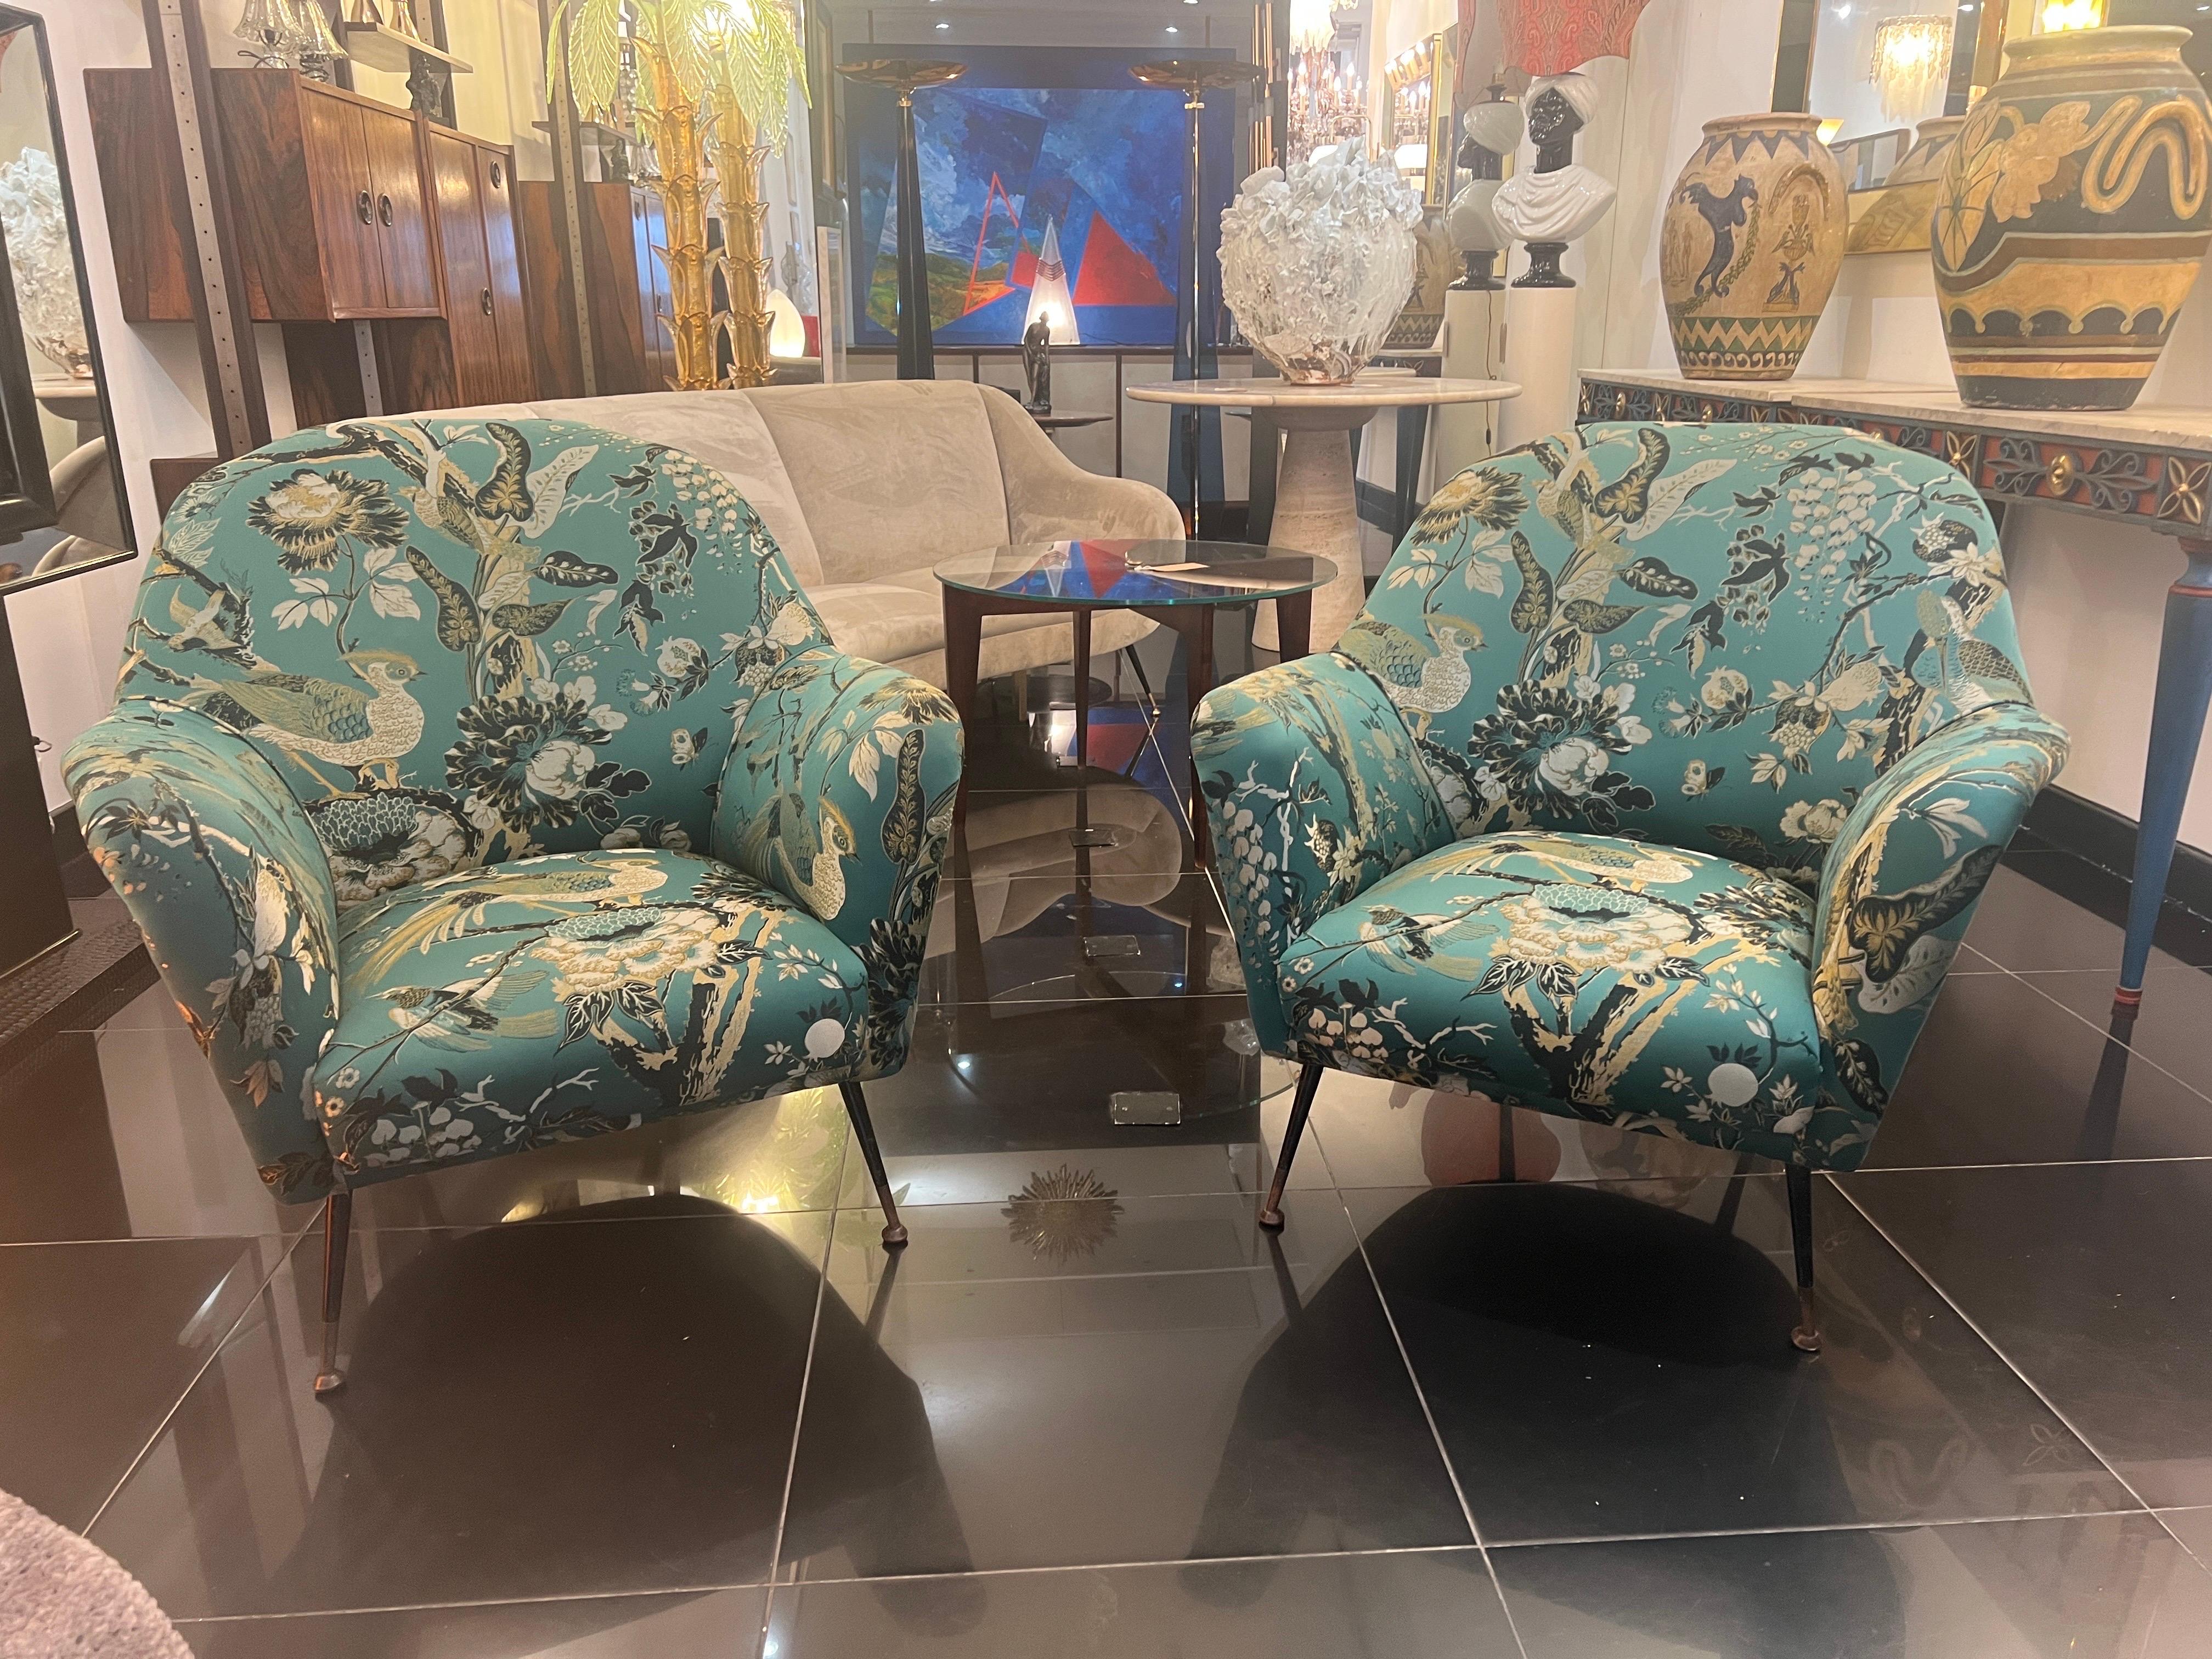 Une paire de fauteuils italiens des années 1950 magnifiquement tapissés de tissu de soie d'oiseaux botaniques avec des broderies en relief. Conception et détails spectaculaires. Les fauteuils sont soutenus par quatre pieds coniques en acier émaillé